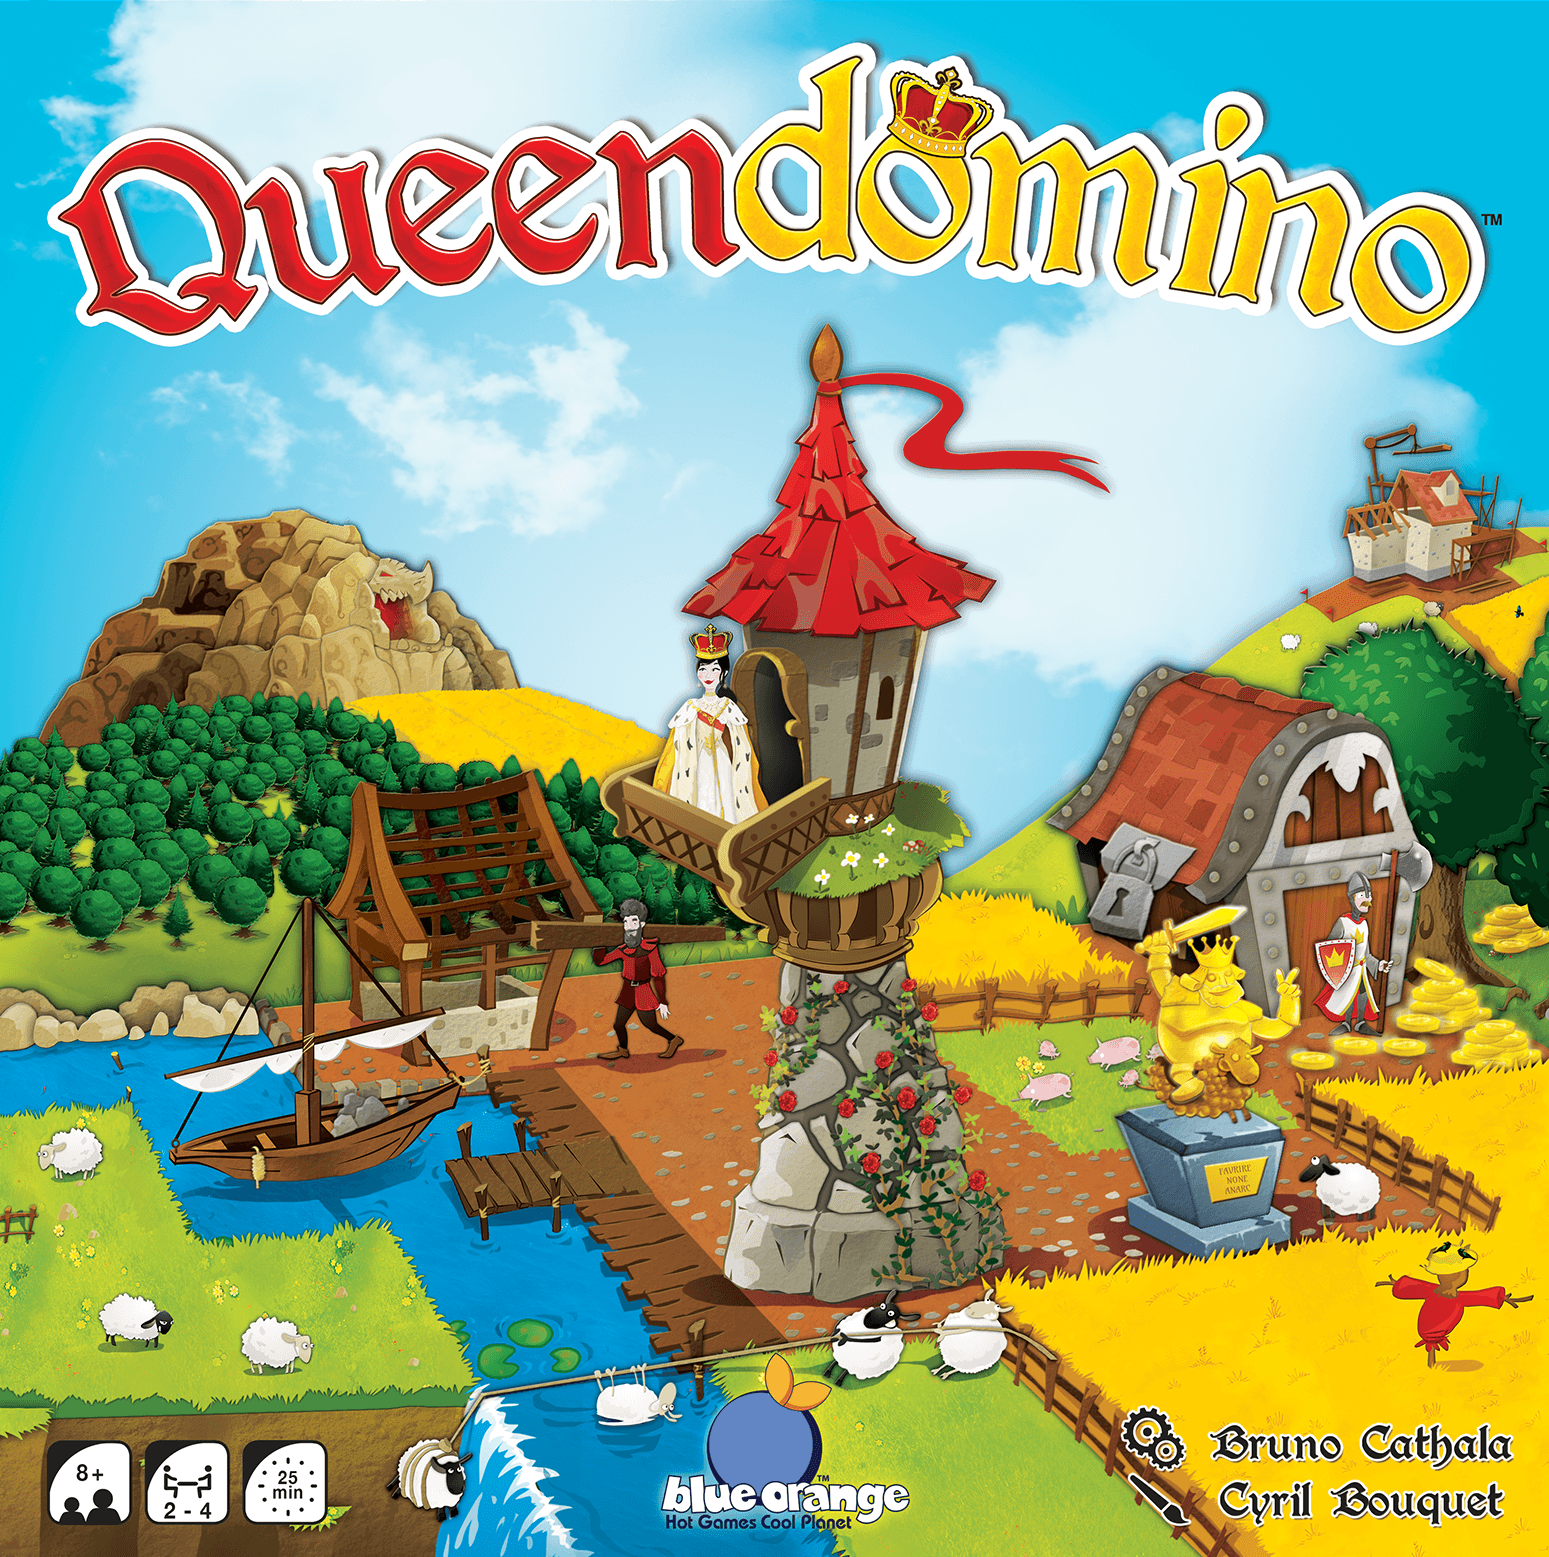 משחק הלוח הקמעונאי Queendomino (מהדורה קמעונאית) Blackrock Games KS800552A